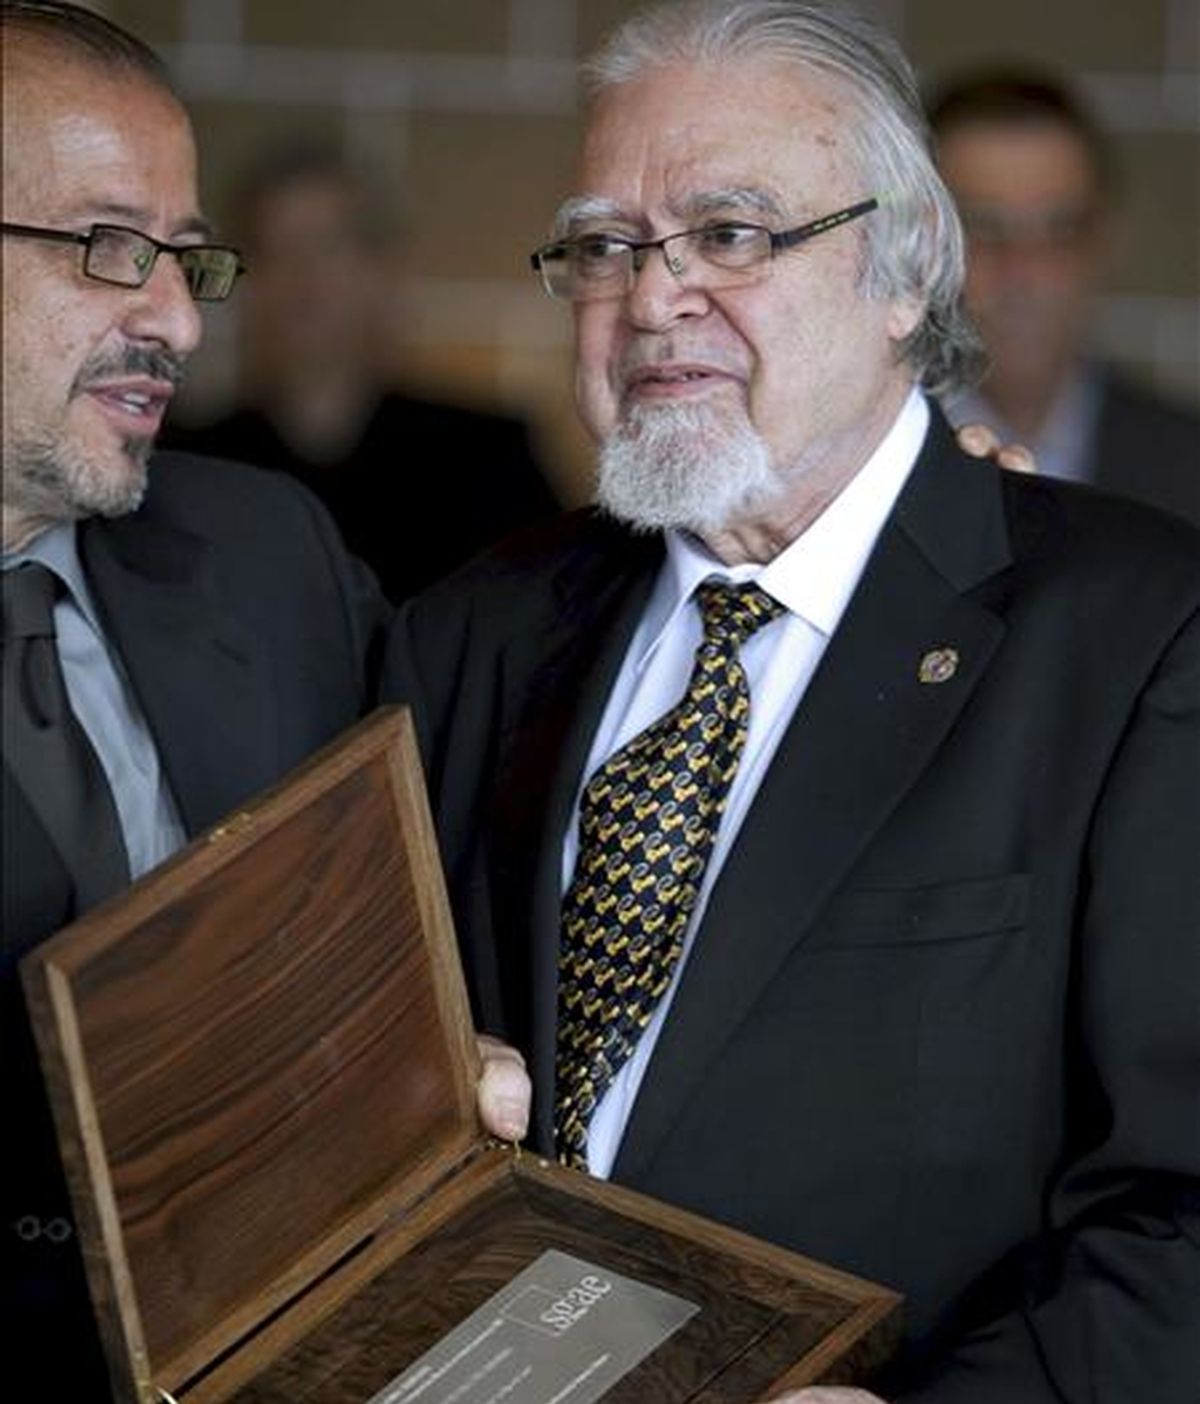 El compositor grancanario Juan José Falcón Sanabria muestra la placa que lo acredita como ganador del premio Daniel Montorio de 2007, que le concedió la SGAE por su ópera 'La Hija del cielo', estrenada en septiembre de ese año. EFE